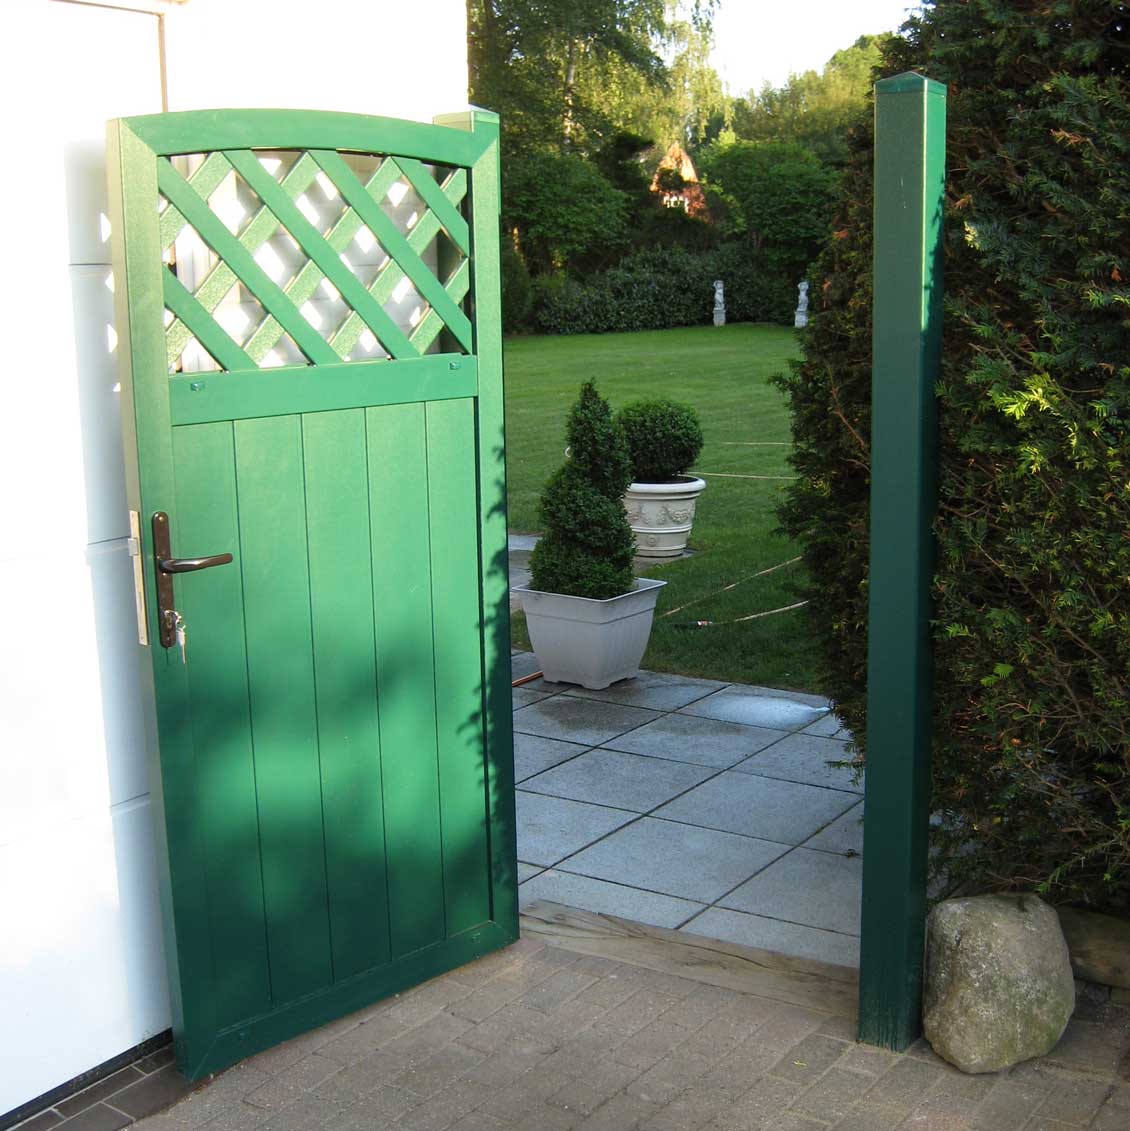 Sichtschutzzaun aus PVC in Grün mit passender Tür für den Zugang zur Gartenterrasse